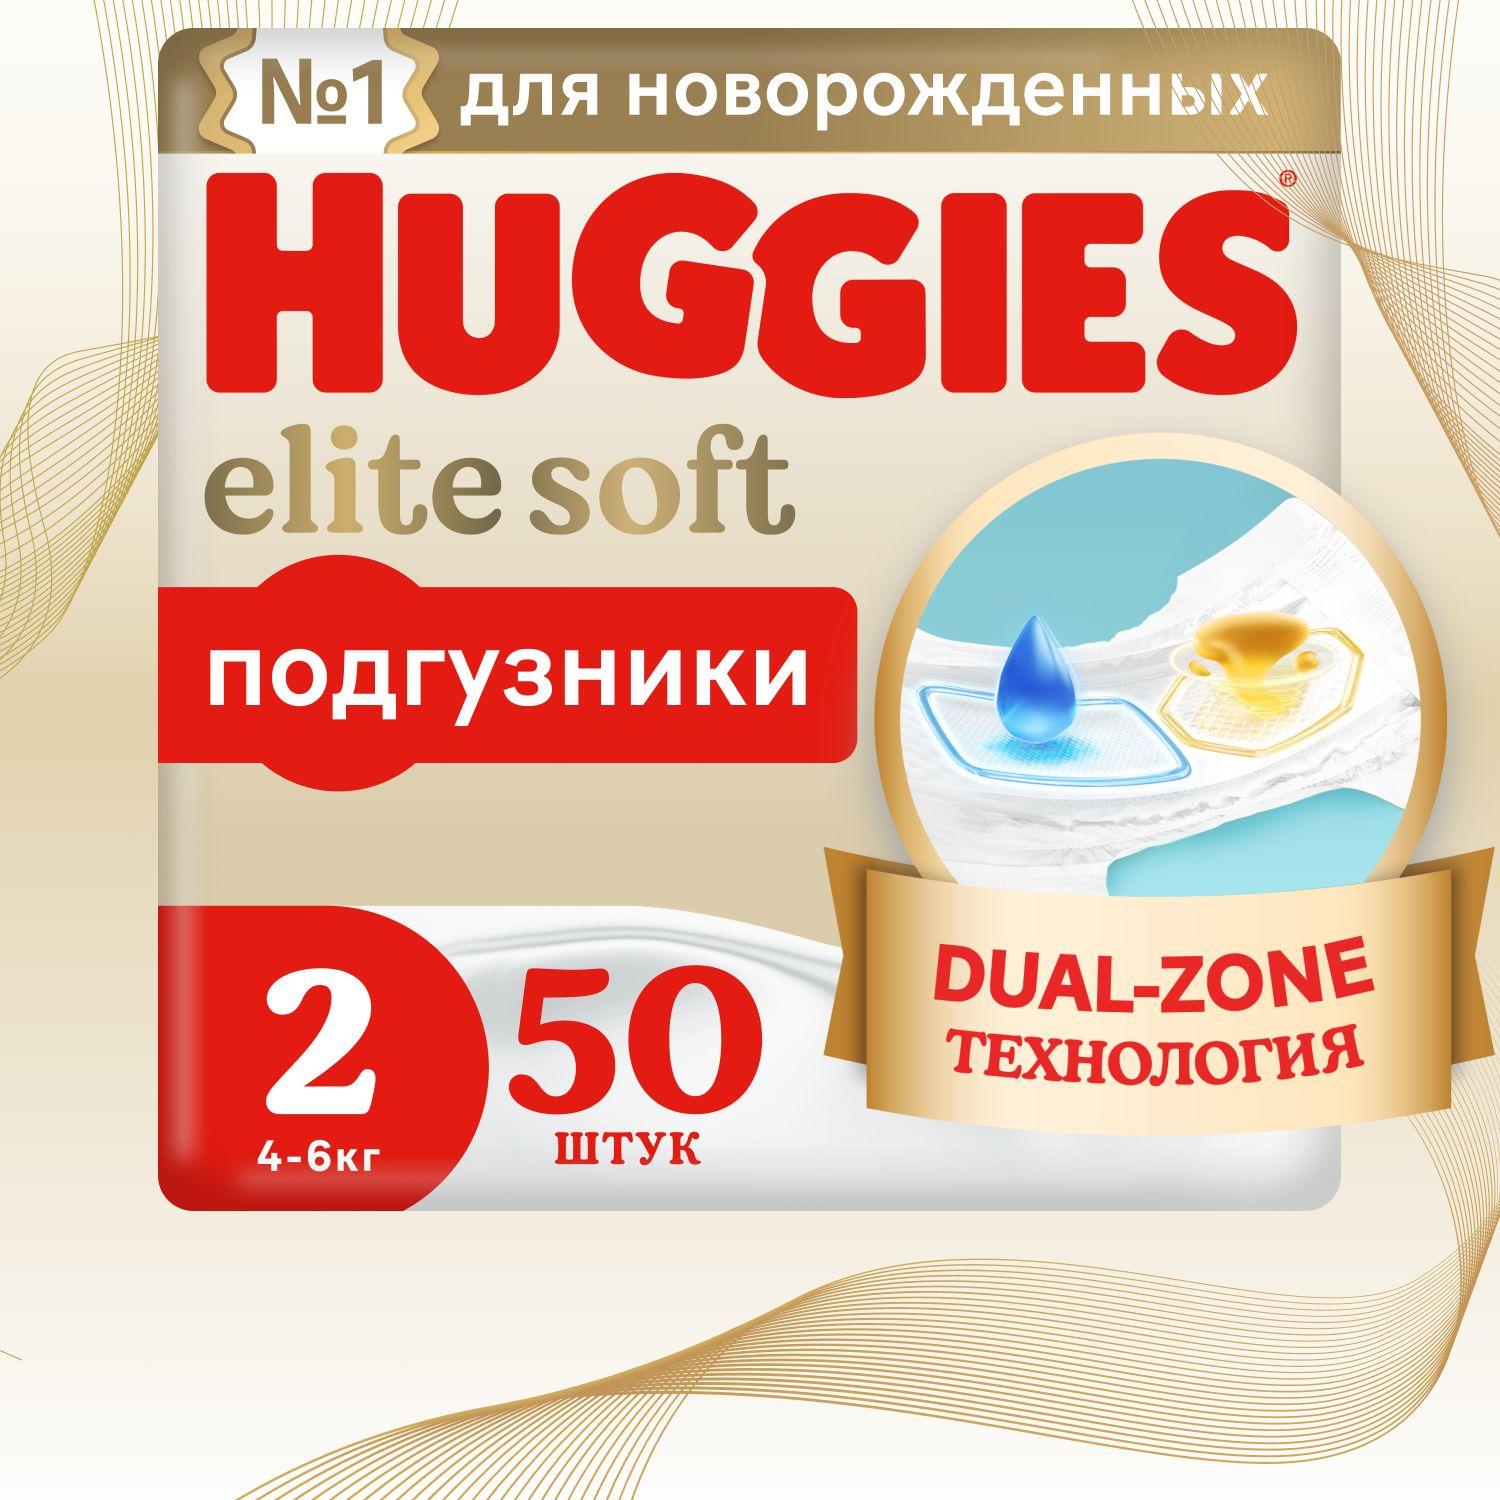 Подгузники для новорожденных Huggies Elite Soft 2 S размер, 4-6 кг, 50 шт